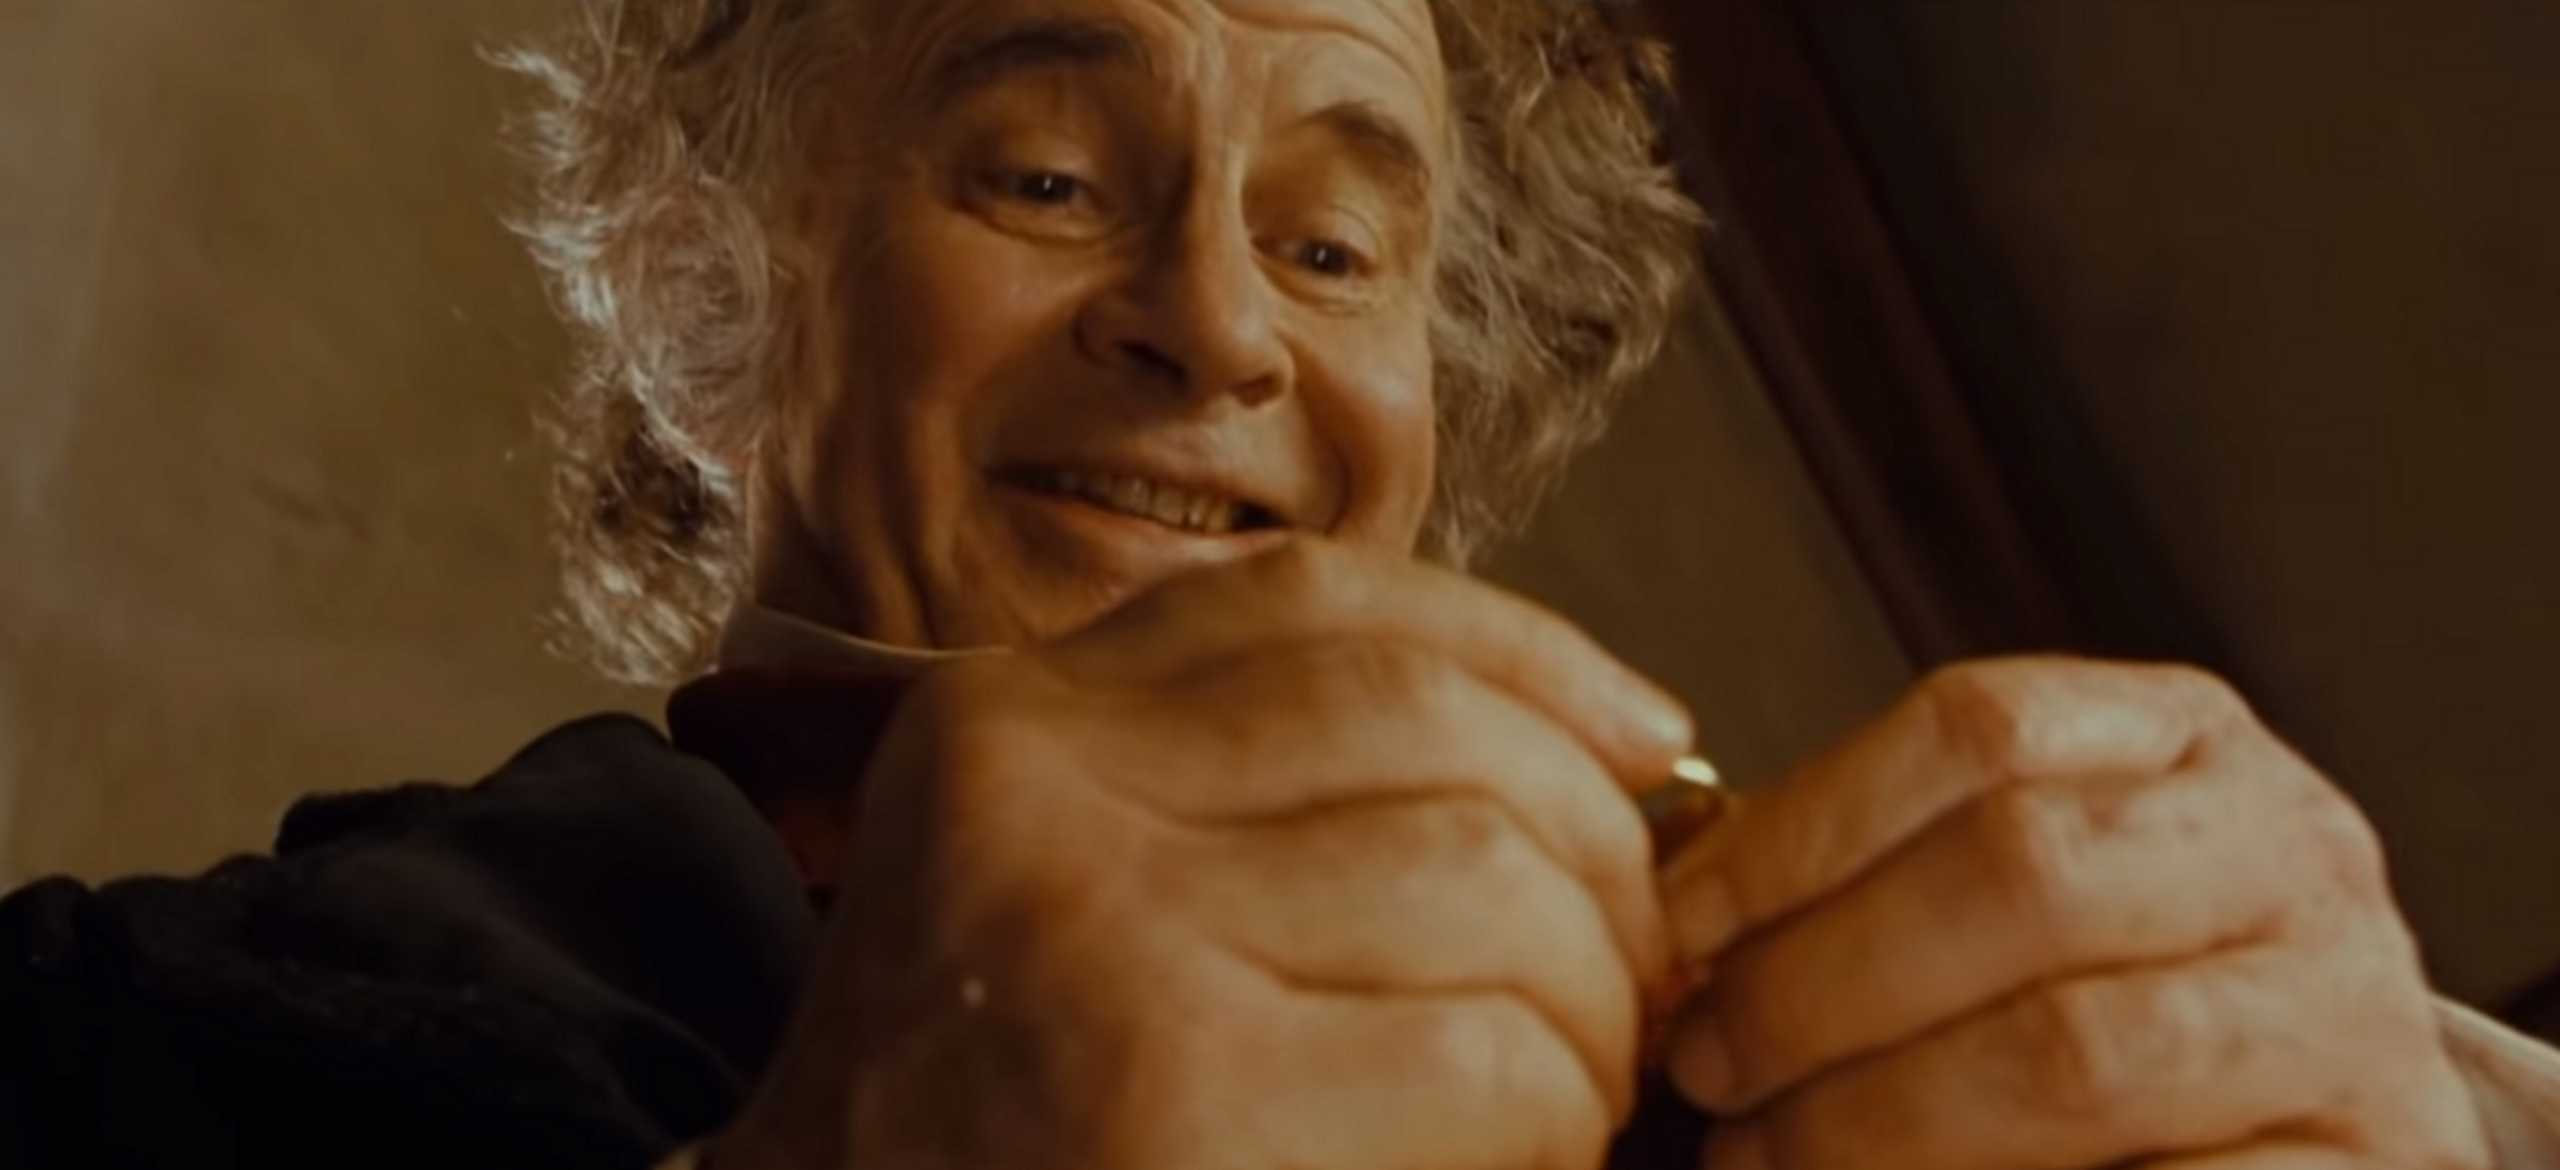 Πέθανε ο Σερ Ίαν Χολμ, ο “Bilbo Baggins” του “Lord of The Rings”! (pics, video)